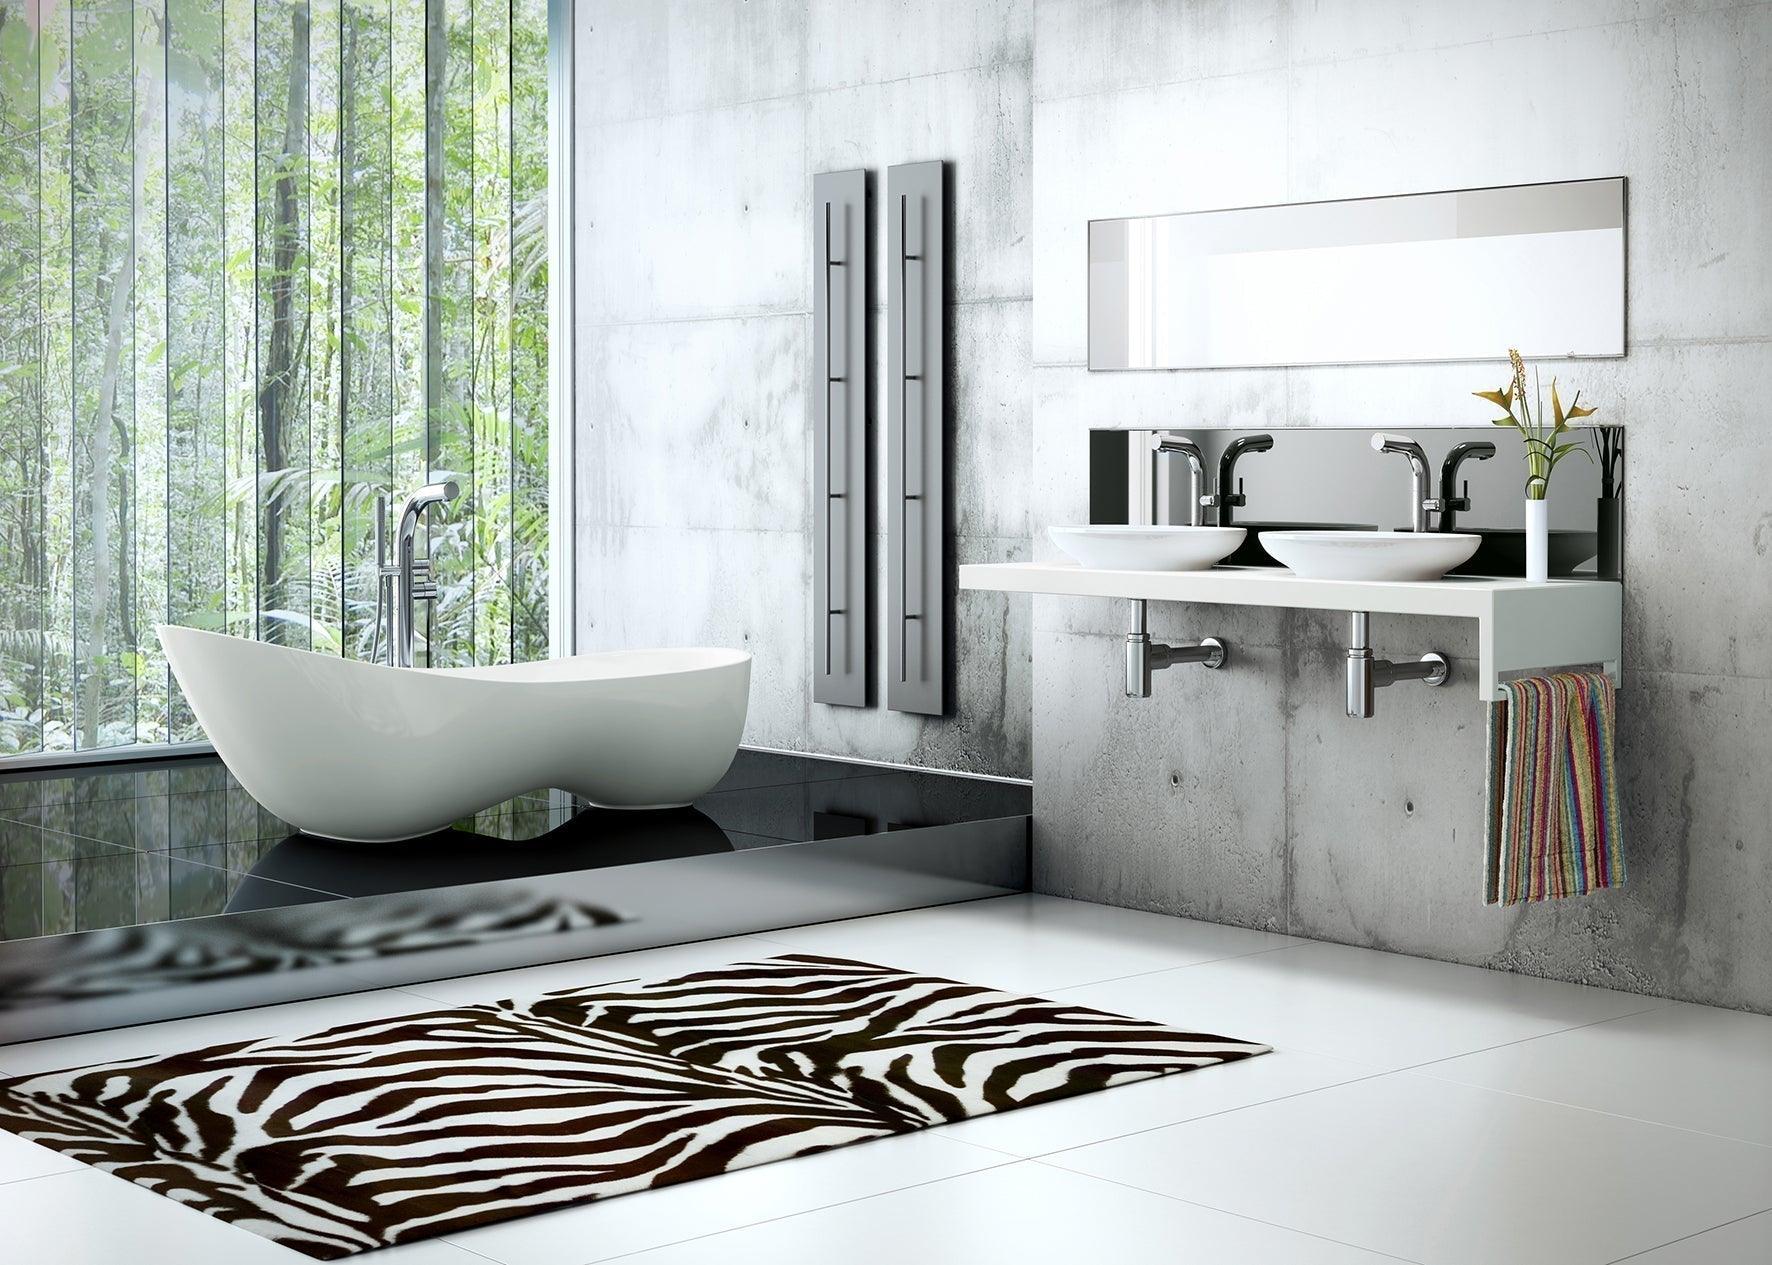 Cabrits Freestanding Bath - Bilden Home & Hardware Market